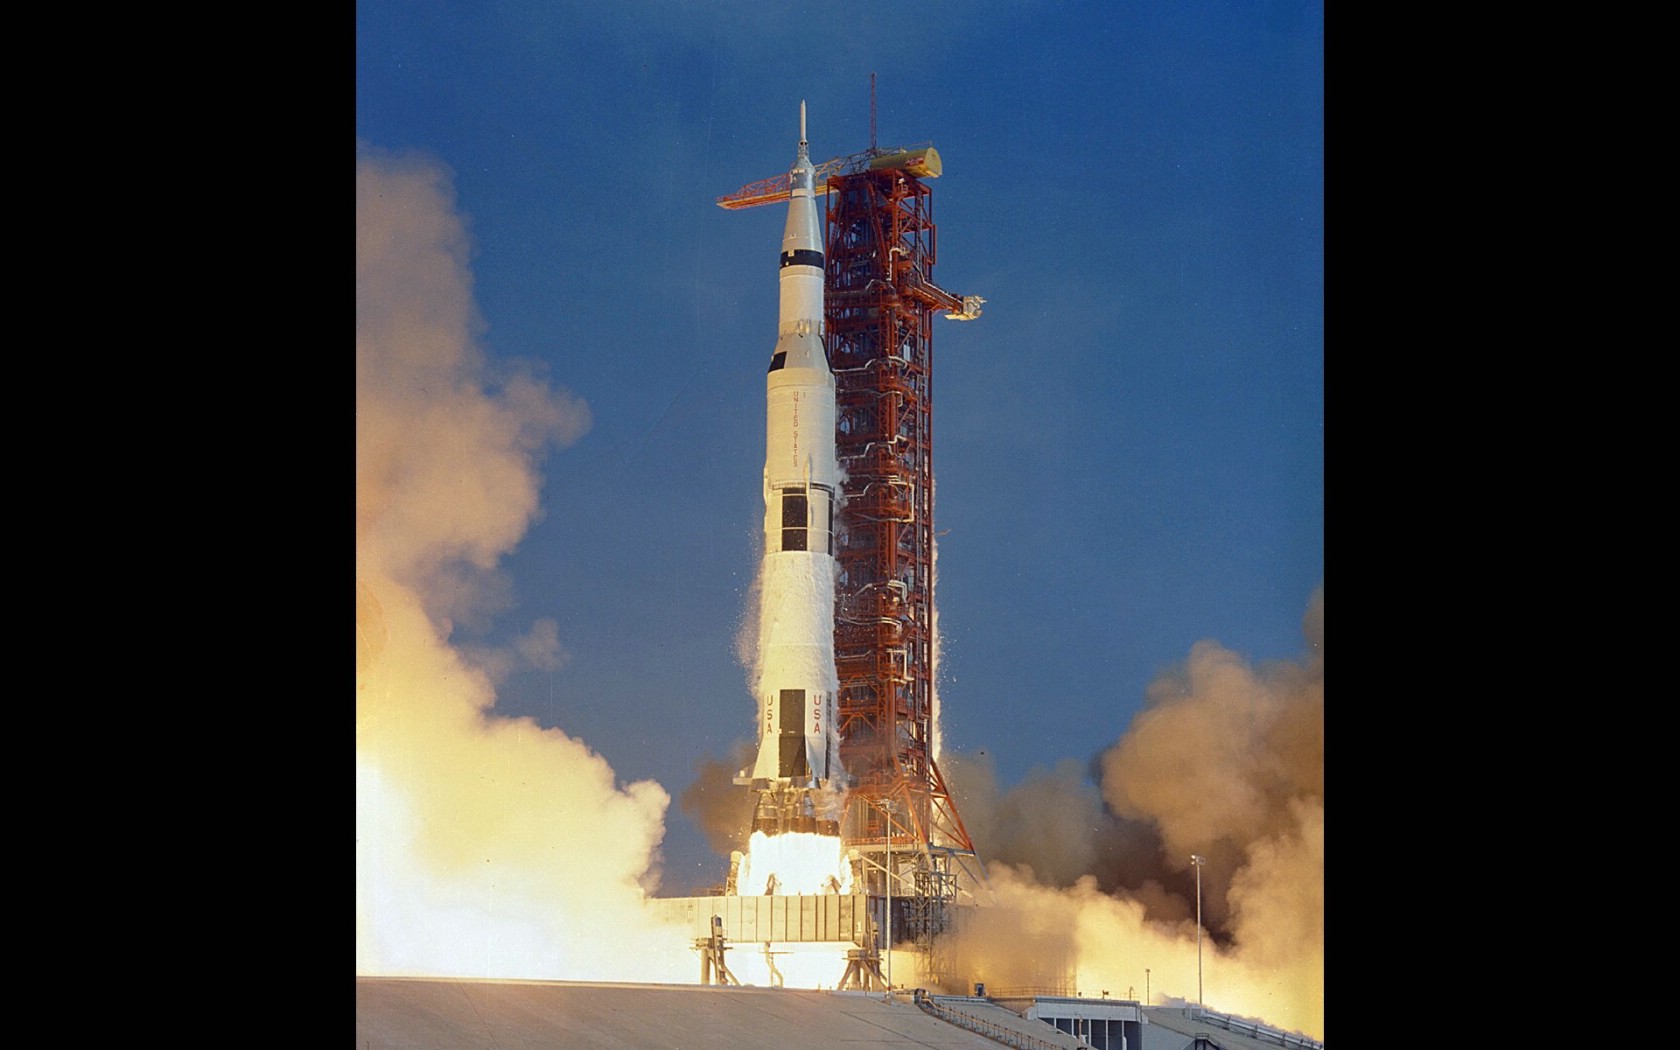 壁纸1680x1050One Giant Leap for Mankind  Apollo 11 Launch 1969年7月16日火箭发射壁纸 阿波罗11号登月40周年纪念壁纸壁纸 阿波罗11号登月40周年纪念壁纸图片 阿波罗11号登月40周年纪念壁纸素材 人文壁纸 人文图库 人文图片素材桌面壁纸